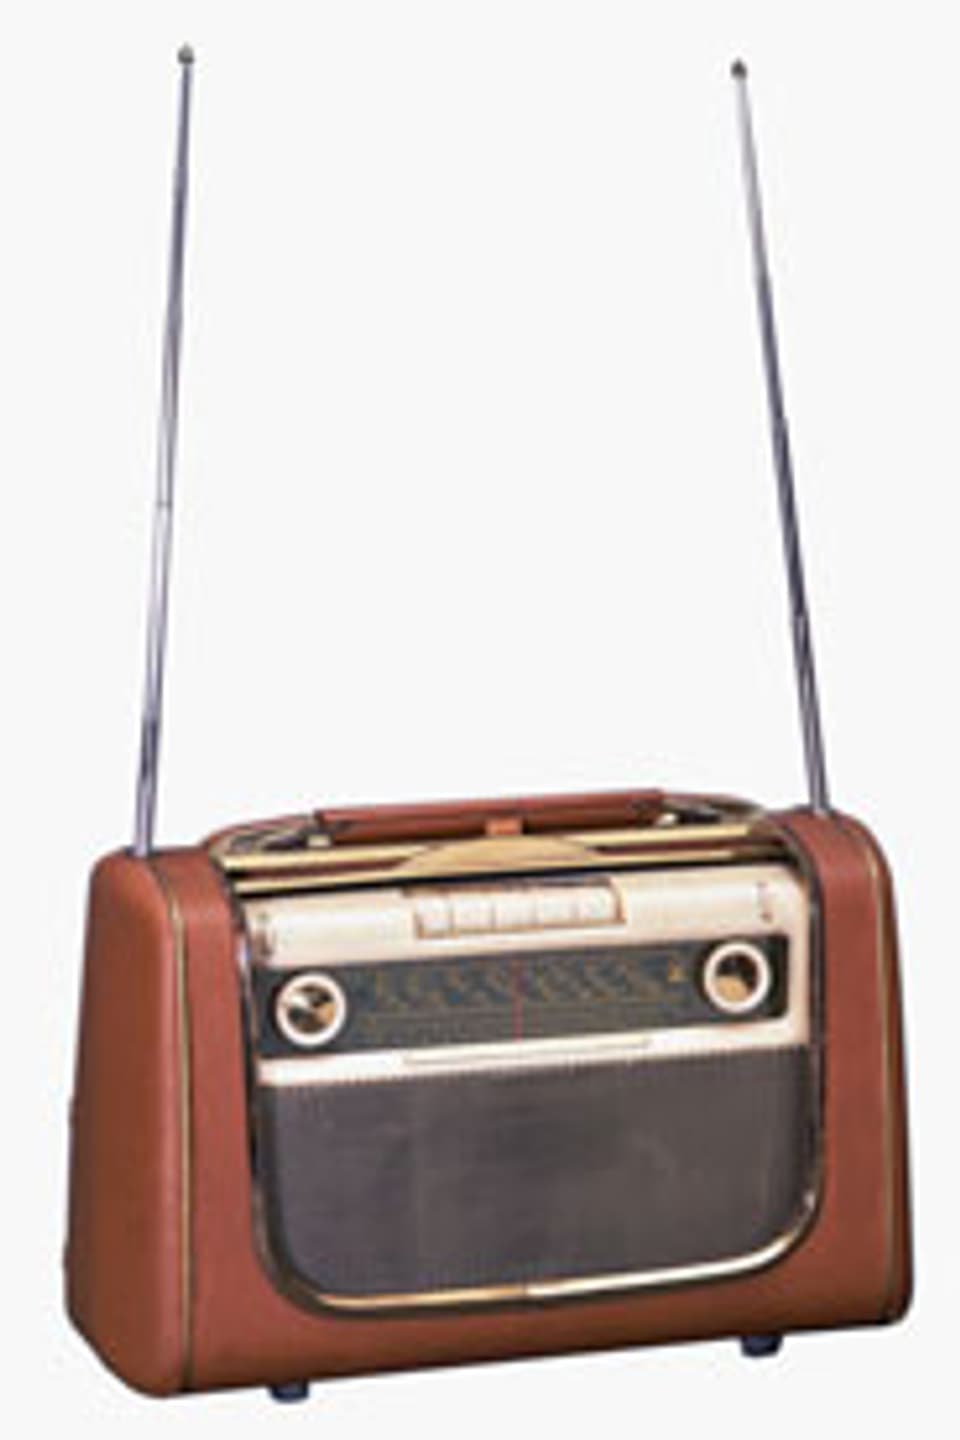 Das «Grundig UKW Concert-Boy 58 Radio» aus dem Jahr 1956.